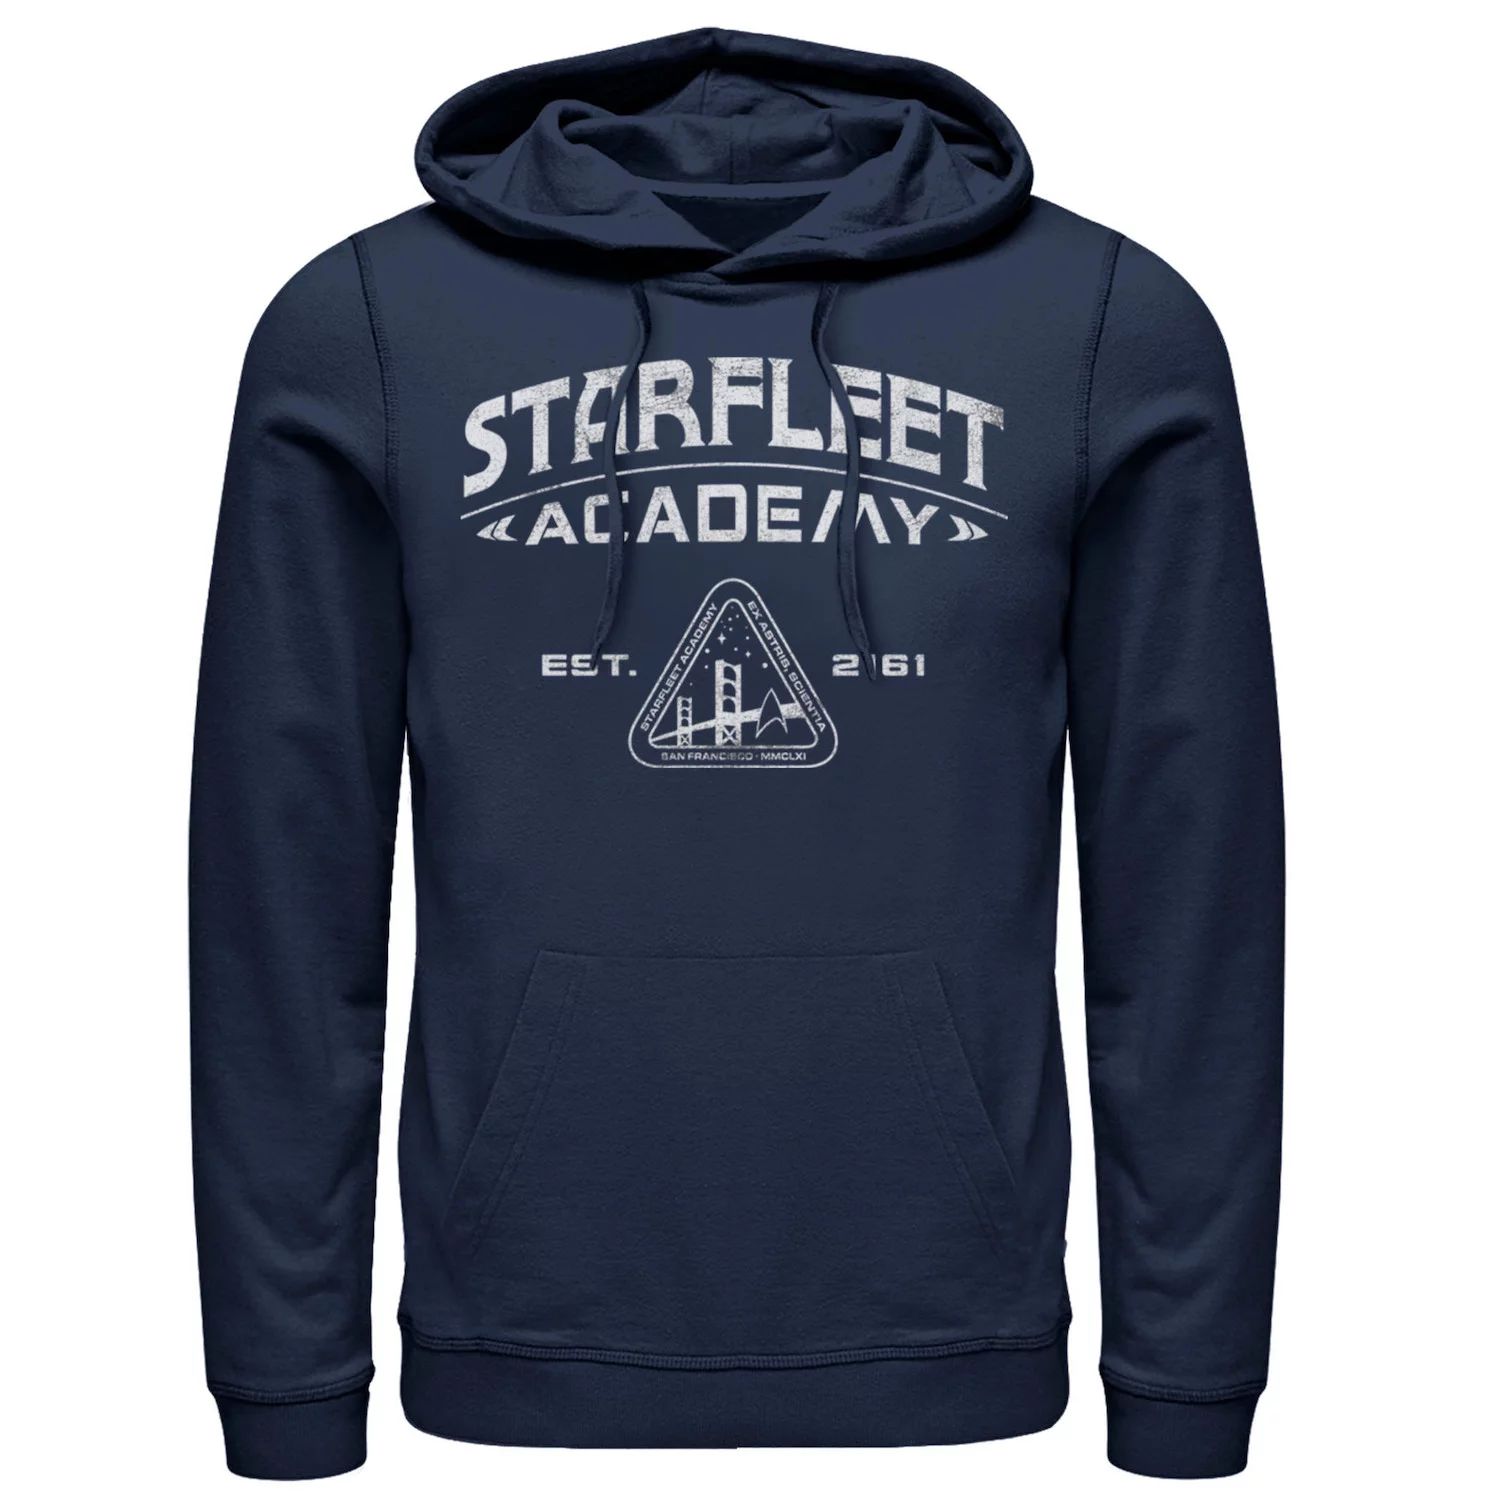 Мужская винтажная толстовка Star Trek Starfleet Academy 2161 Licensed Character